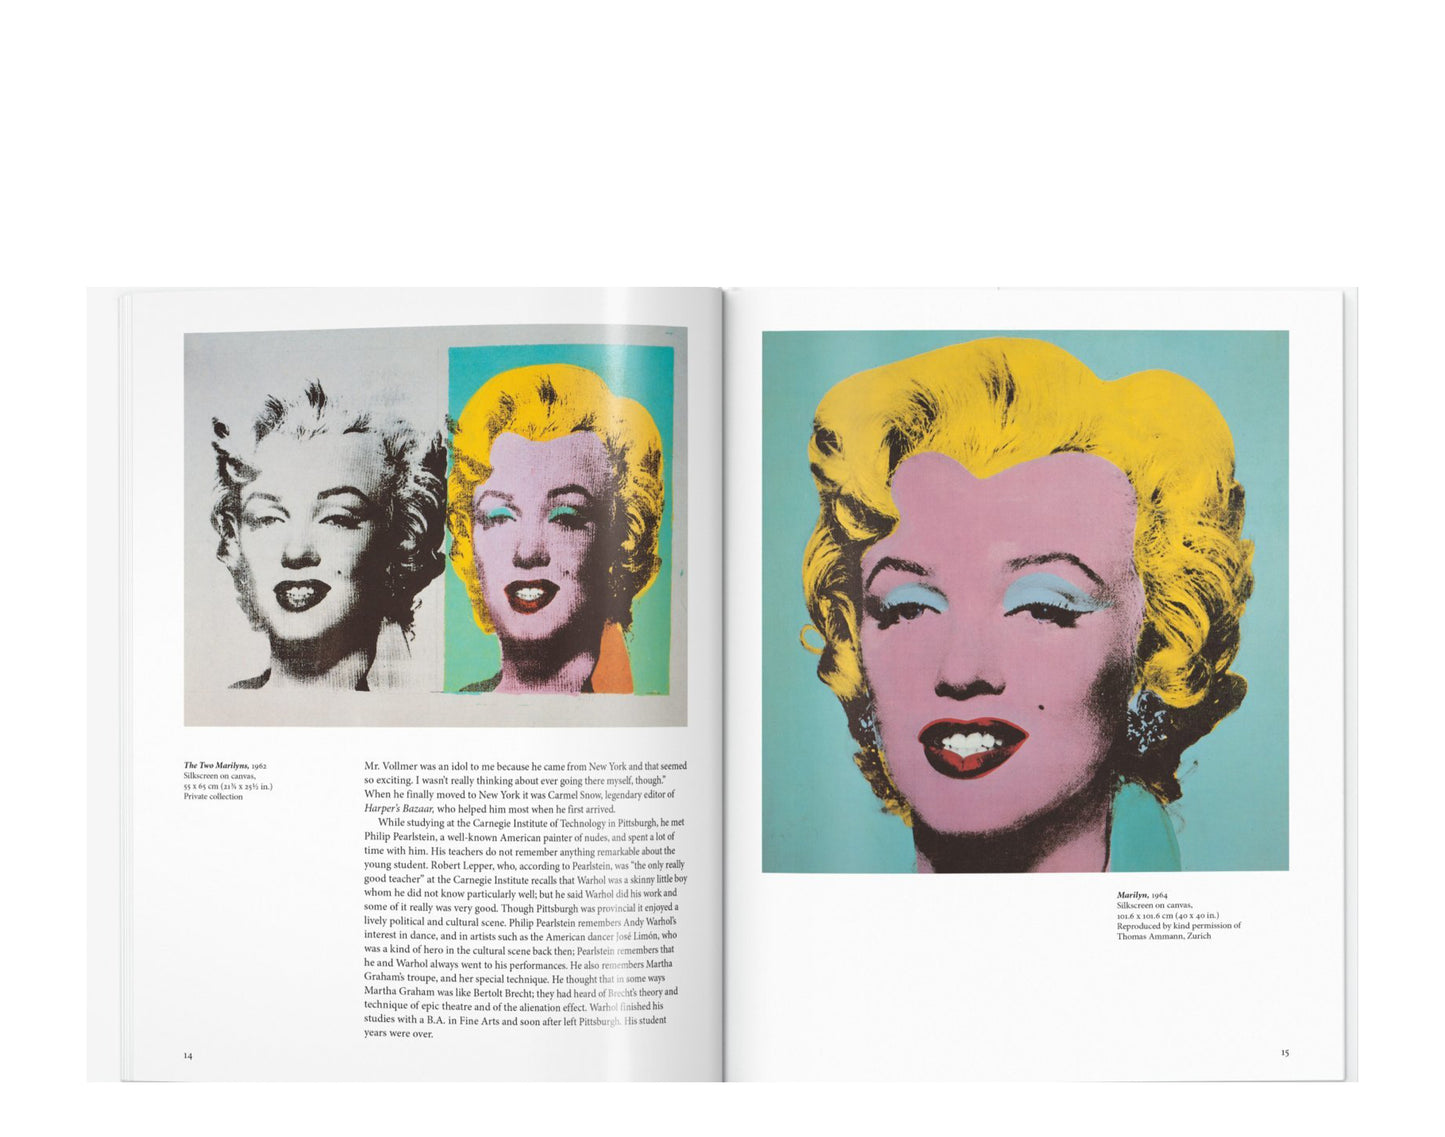 Taschen Books - Warhol Hardcover Book